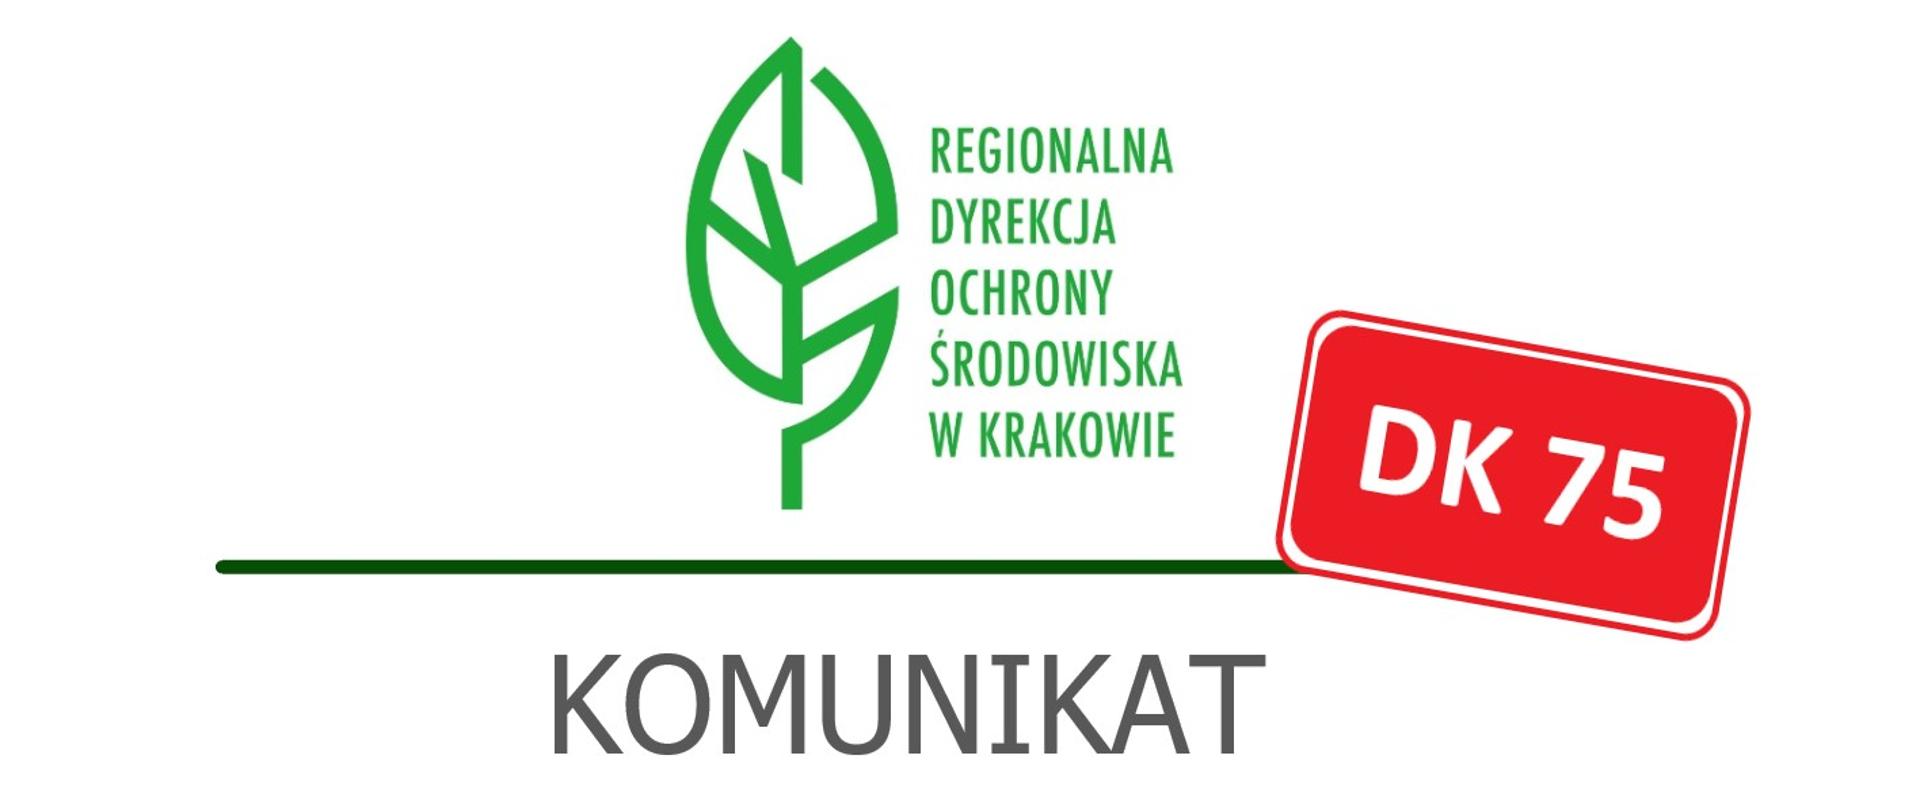 Zielony liść logo Regionalnej Dyrekcji Ochrony Środowiska w Krakowie. Pod spodem szary napis komunikat. Po prawej stronie czerwona tabliczka z białym napisem DK75.